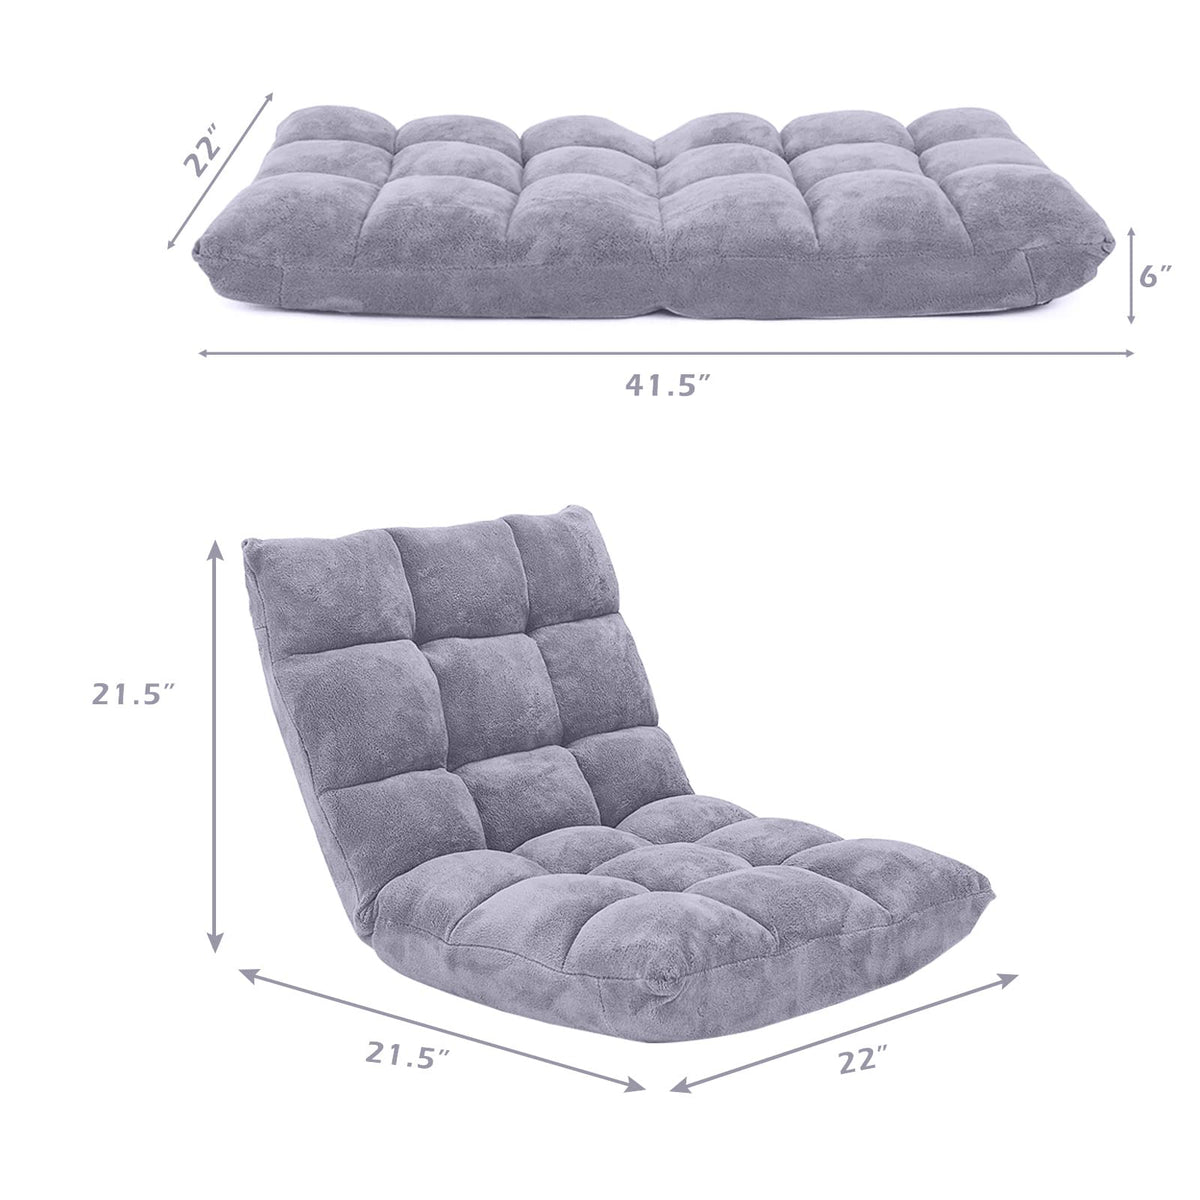 Giantex Adjustable 14-Position Memory Foam Floor Chair